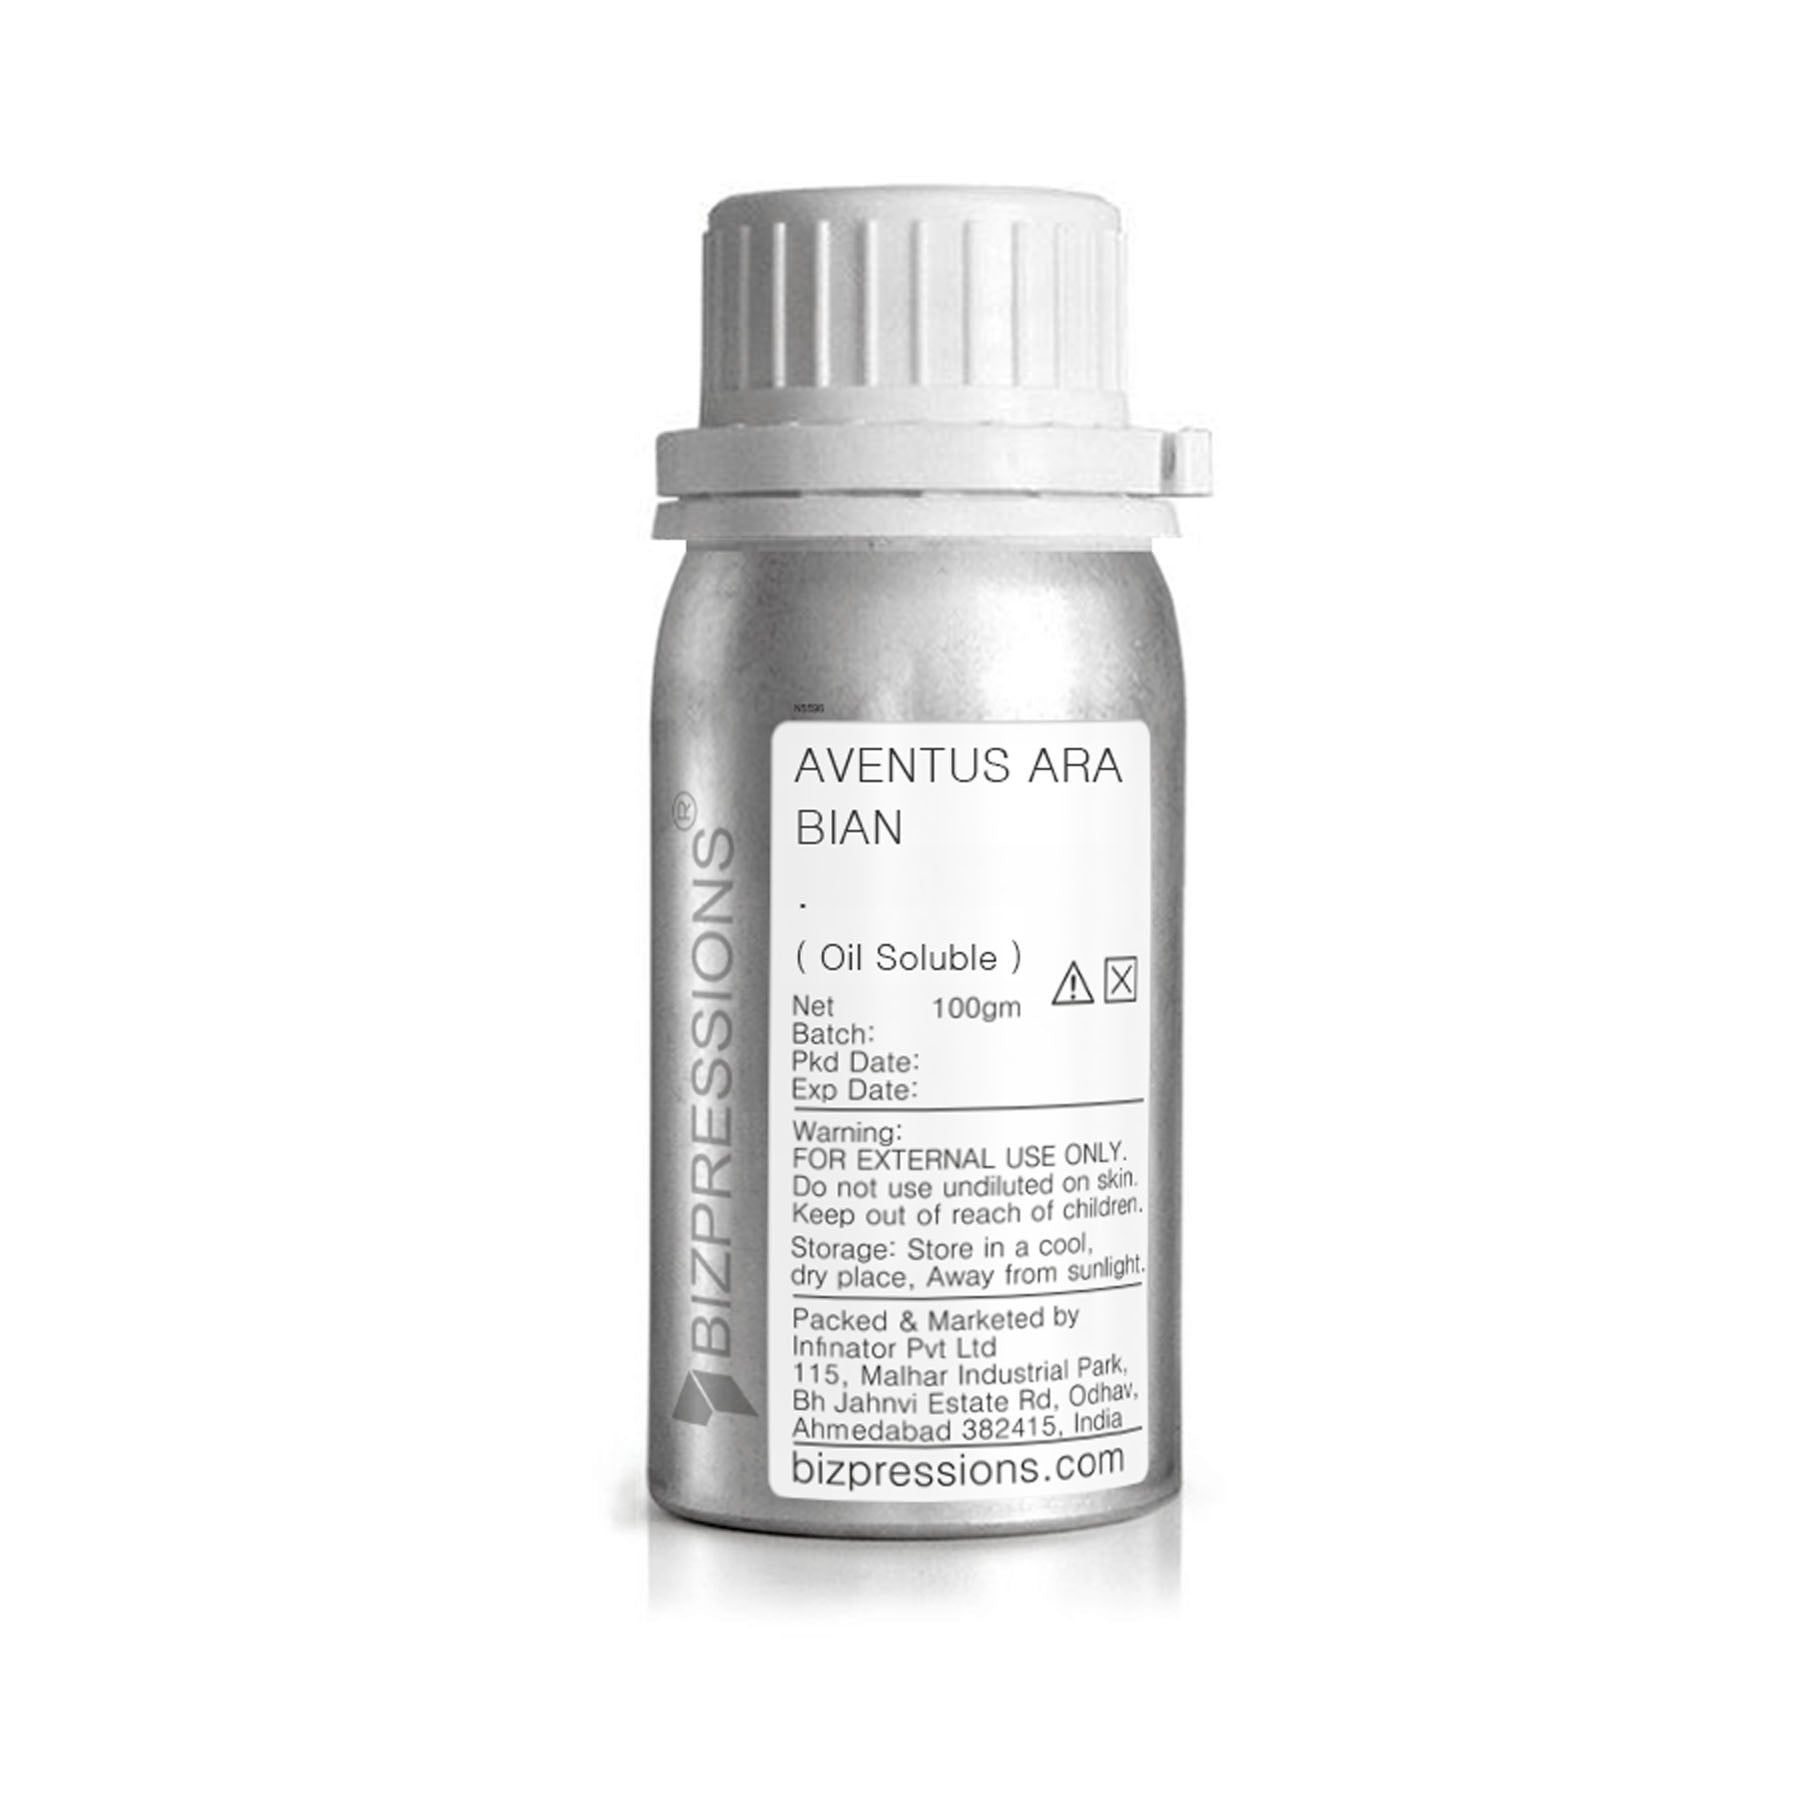 AVENTUS ARABIAN - Fragrance ( Oil Soluble ) - 100 gm